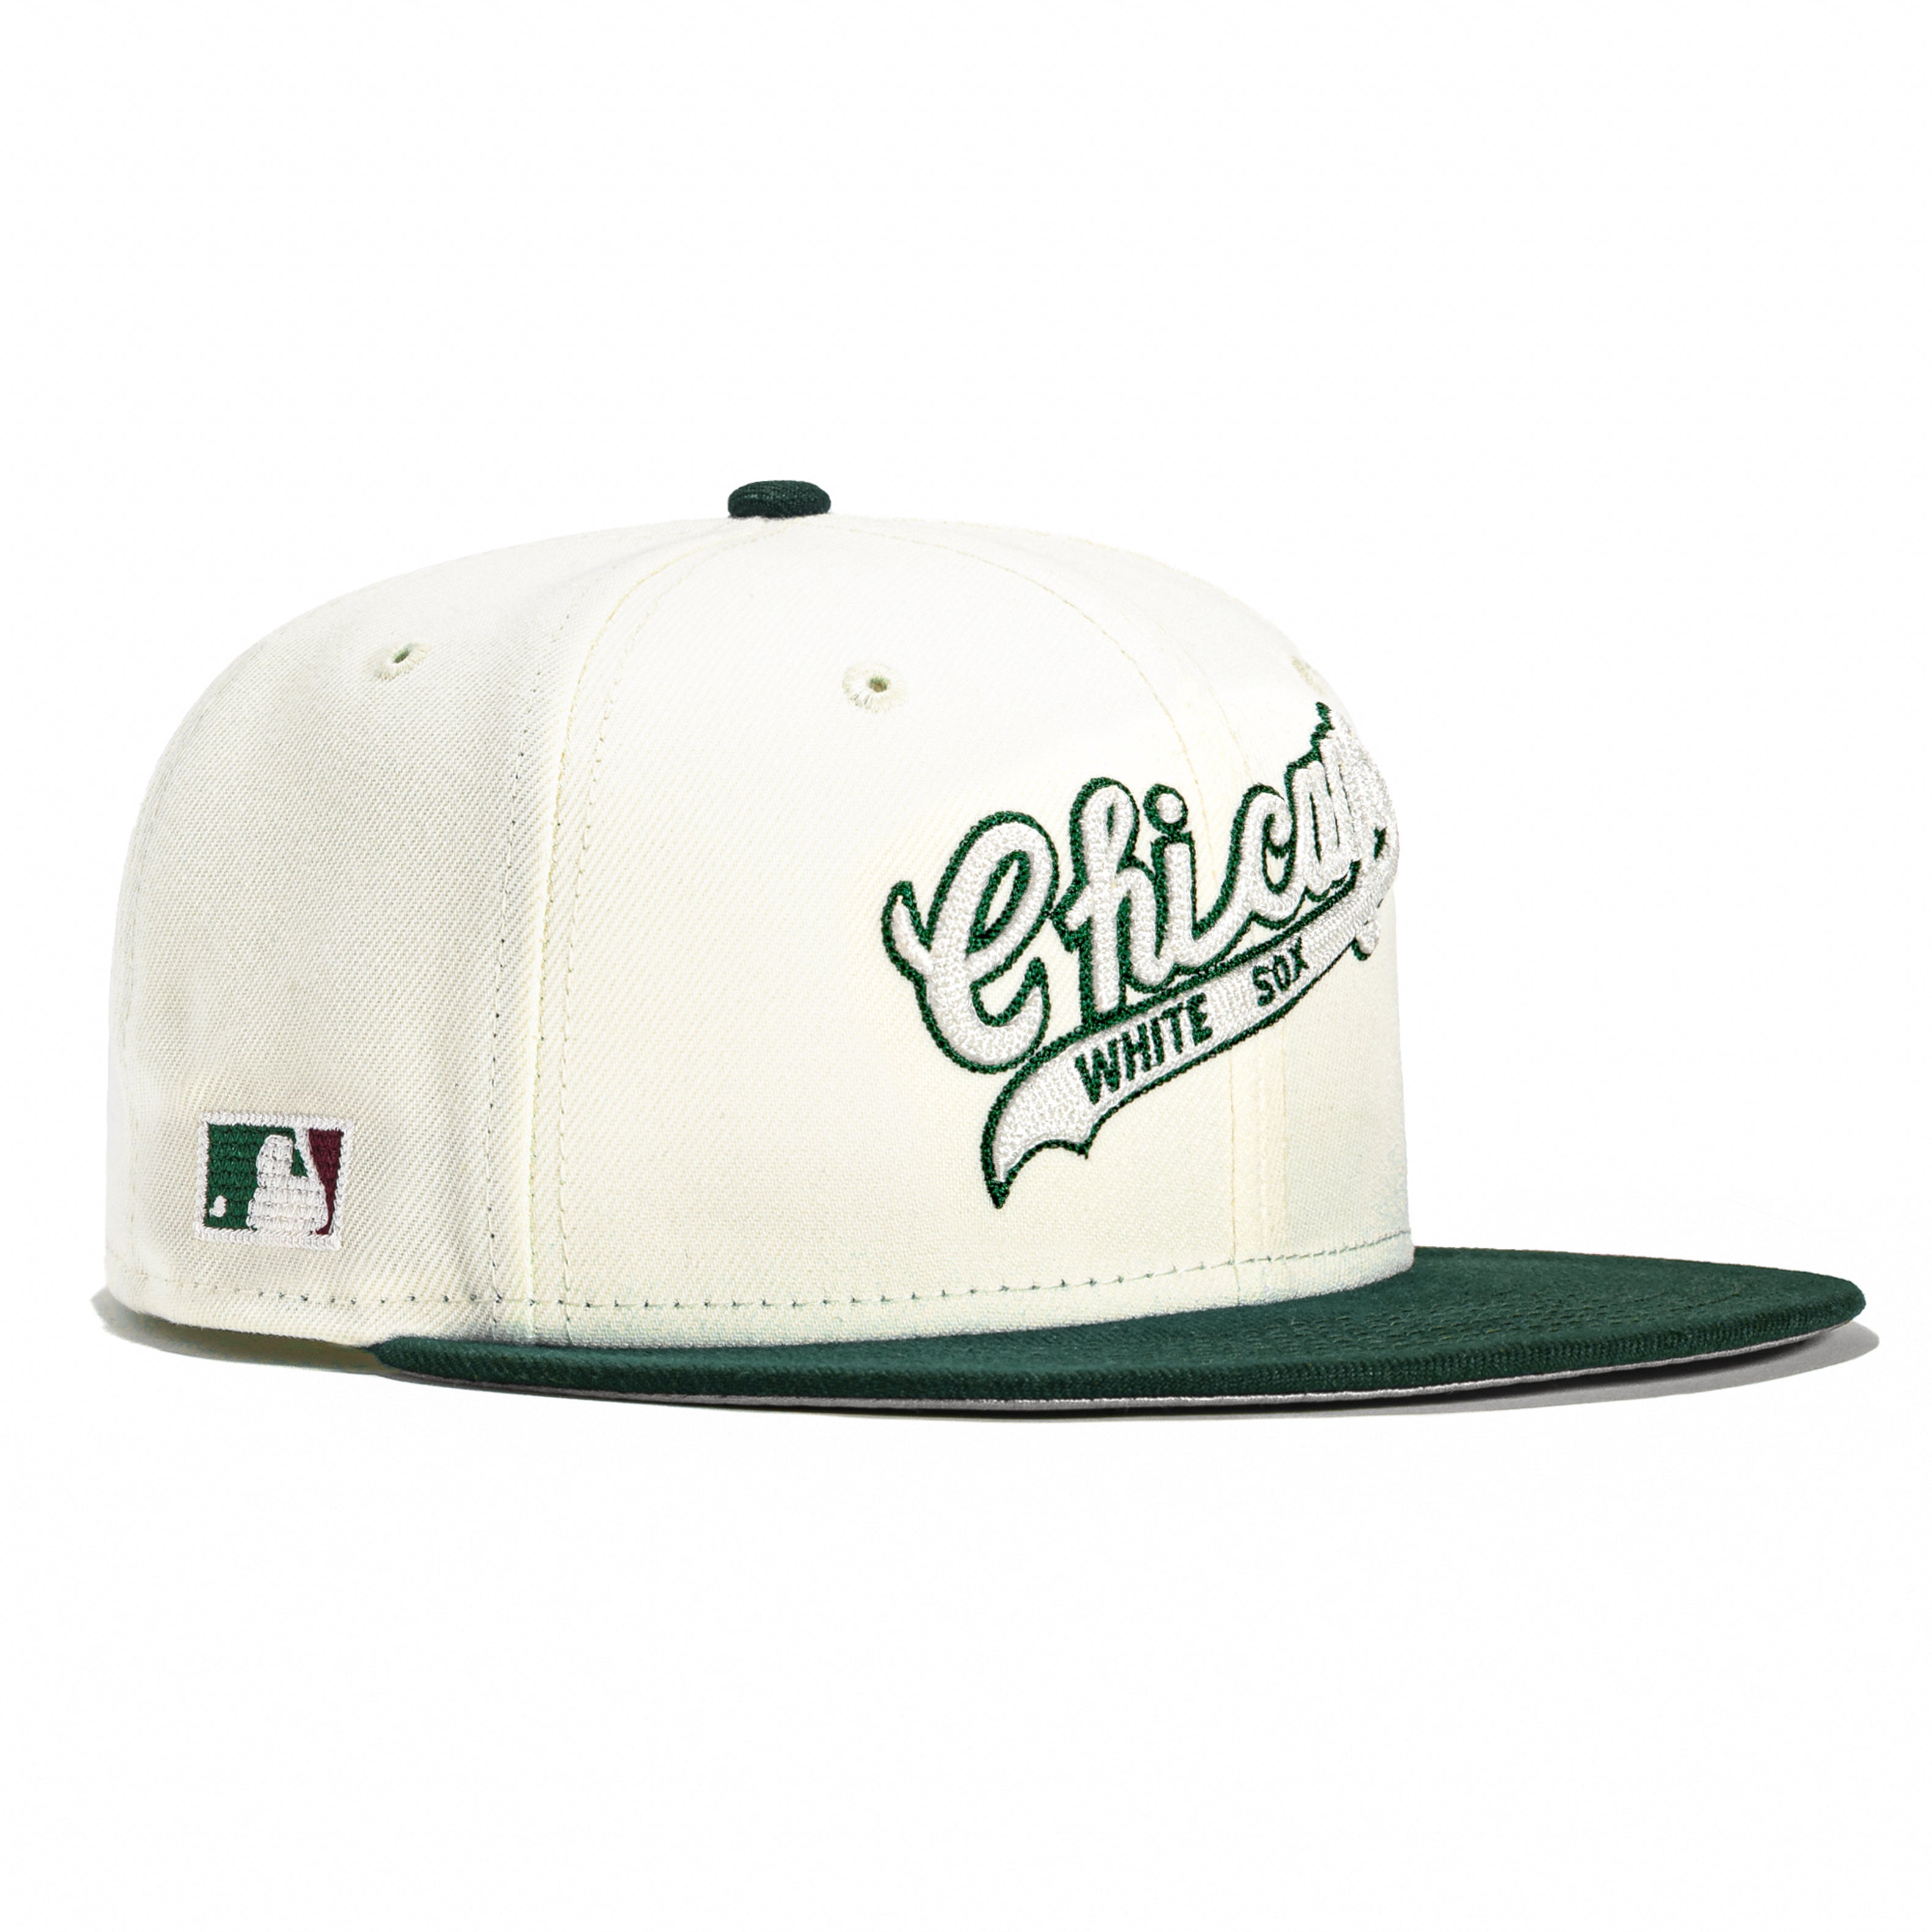 New Era 59FIFTY Chain Stitch Chicago White Sox Hat - White, Green White/Green / 7 1/8